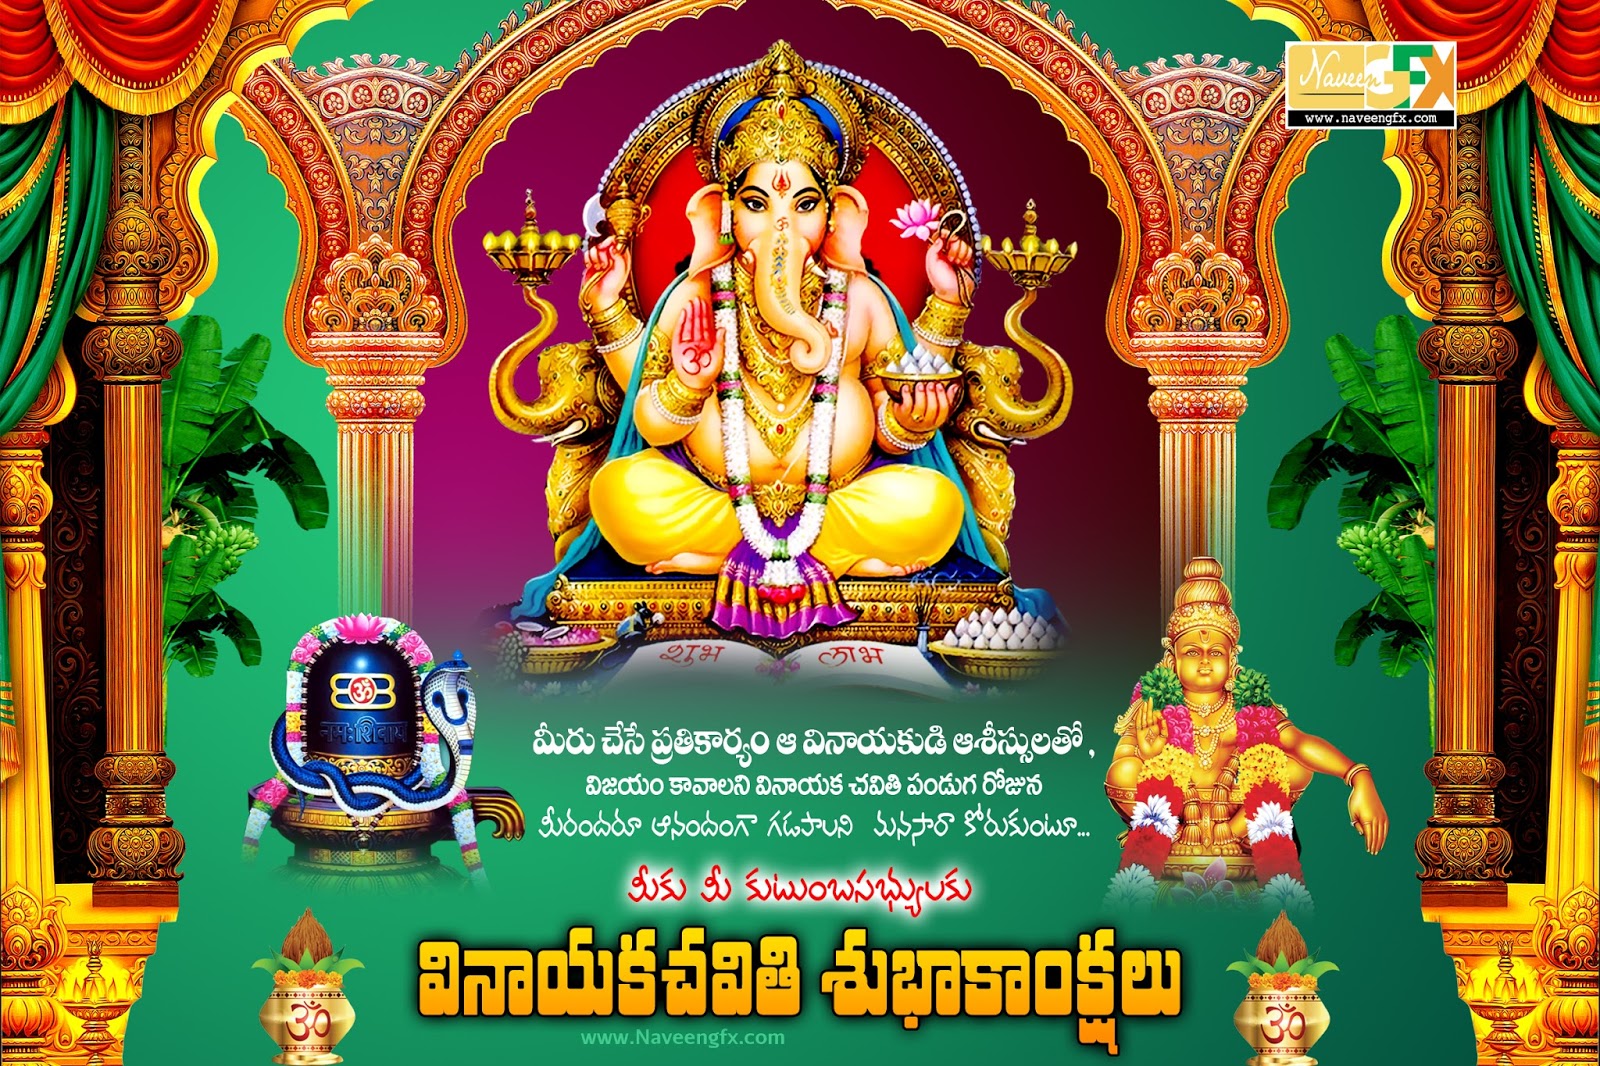 Vinayaka Chavithi Telugu Images Wishes HD Wallpapers Photos ...